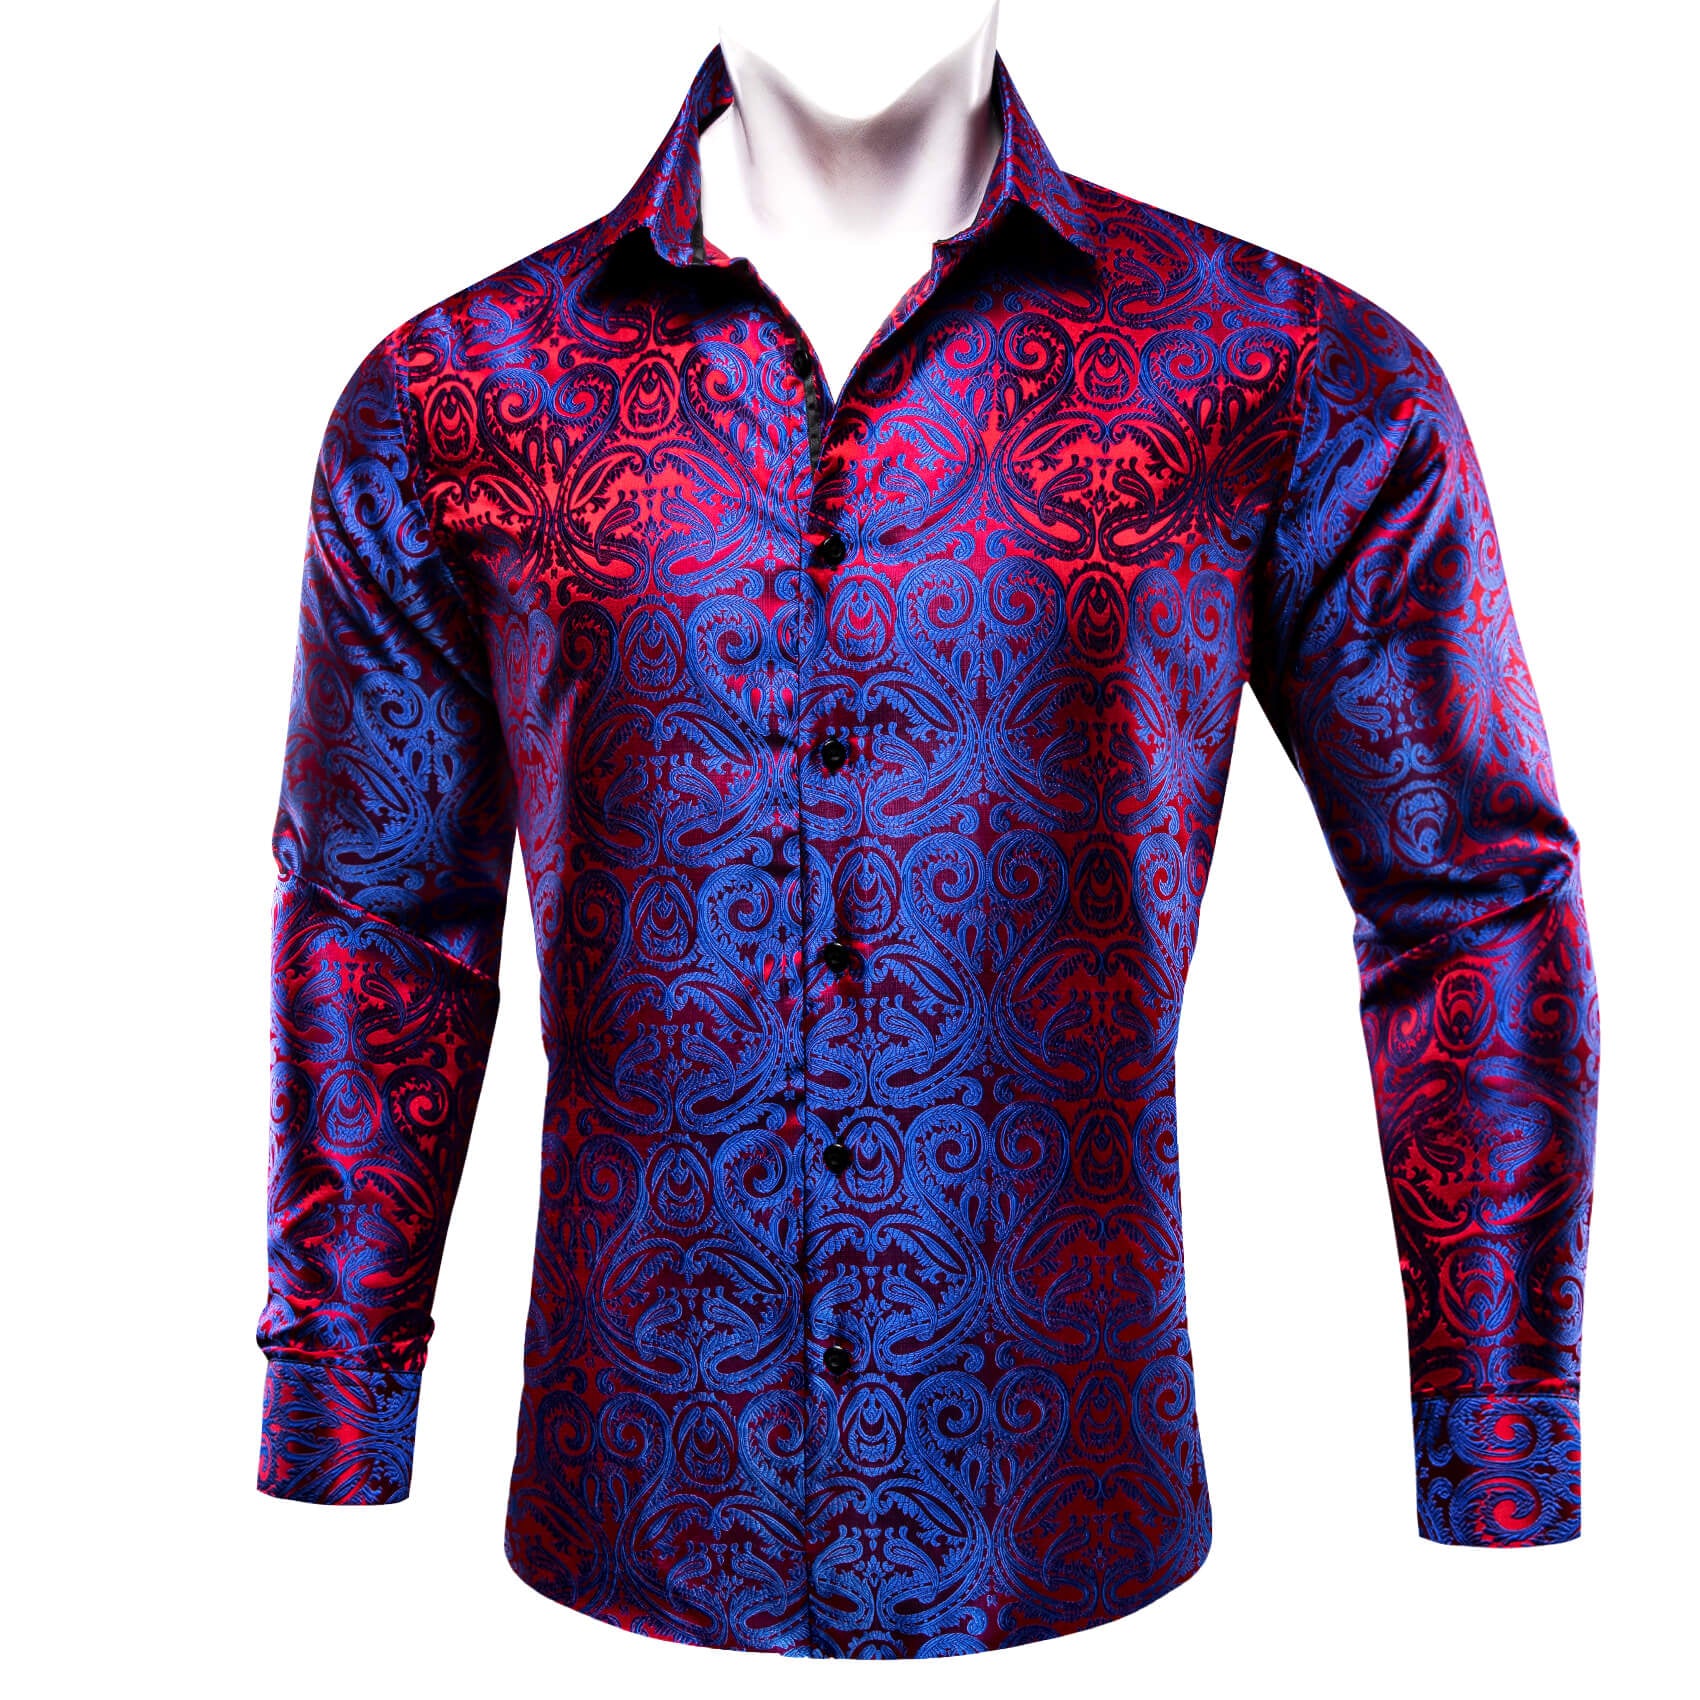 Barry.wang Men's Shirt Blue Red Paisley Silk Long Sleeve Shirt